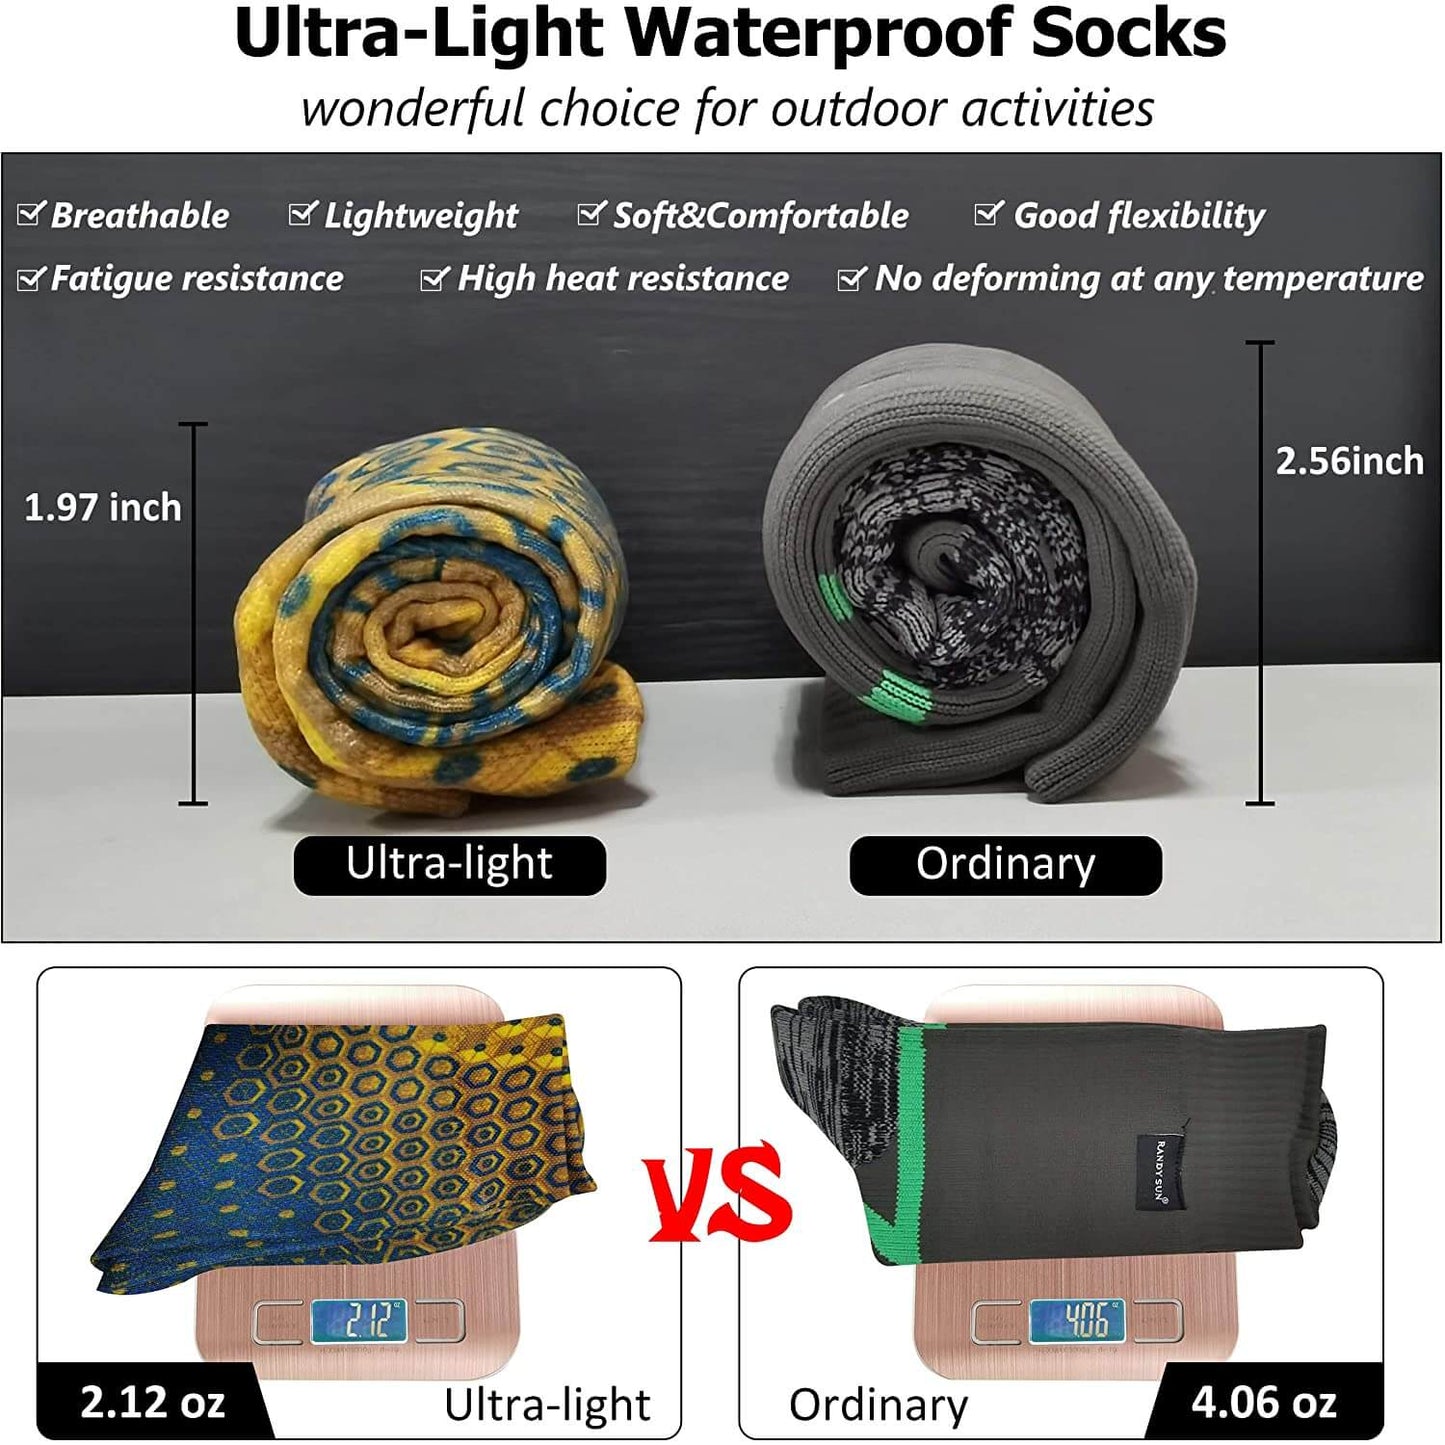 light waterproof socks